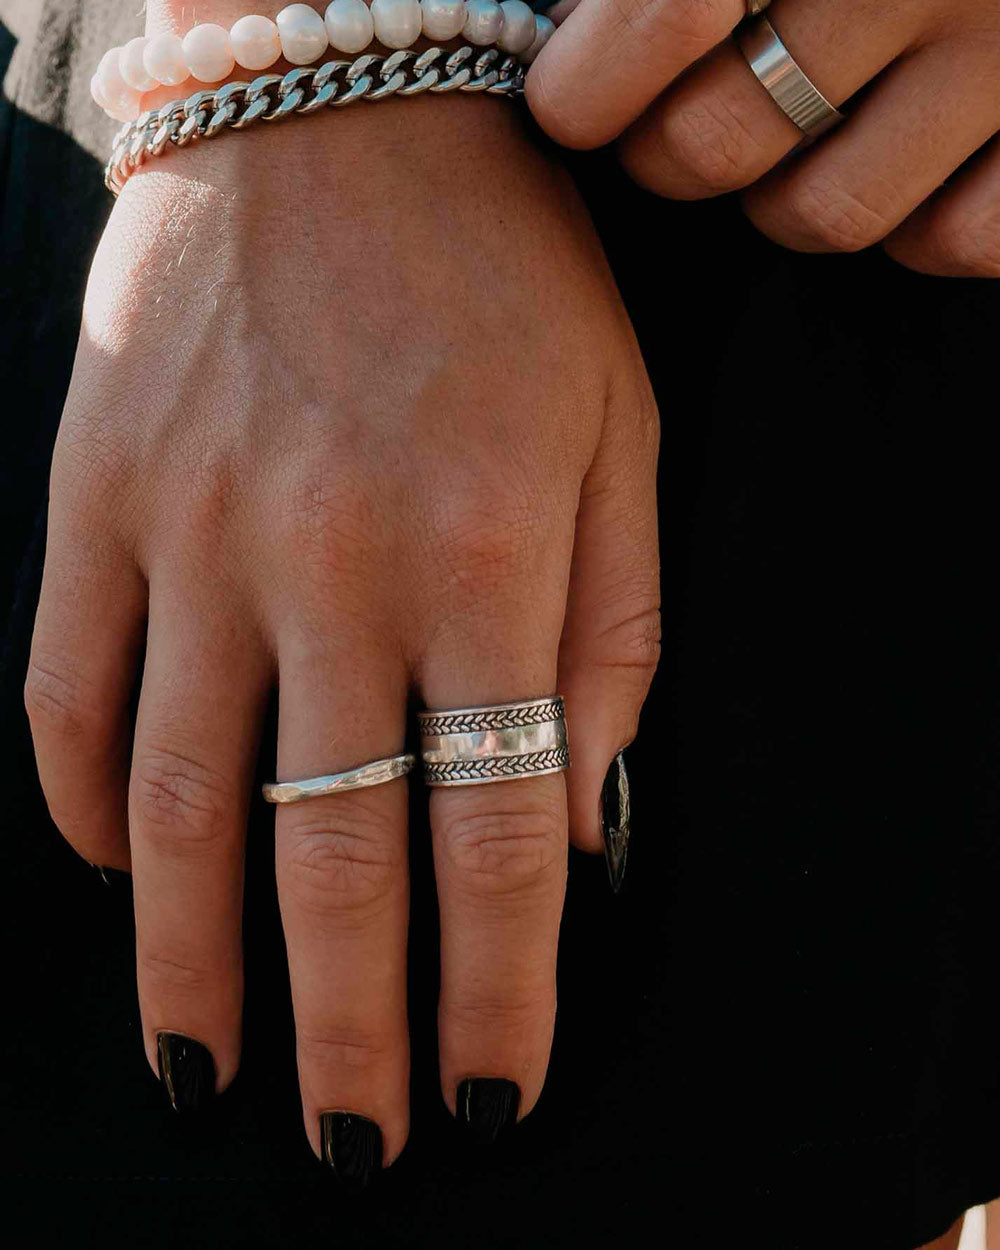 Anillo 'Calisto' de Plata 925 para hombre y mujer en el dedo del modelo - Joyería Online - Dicci